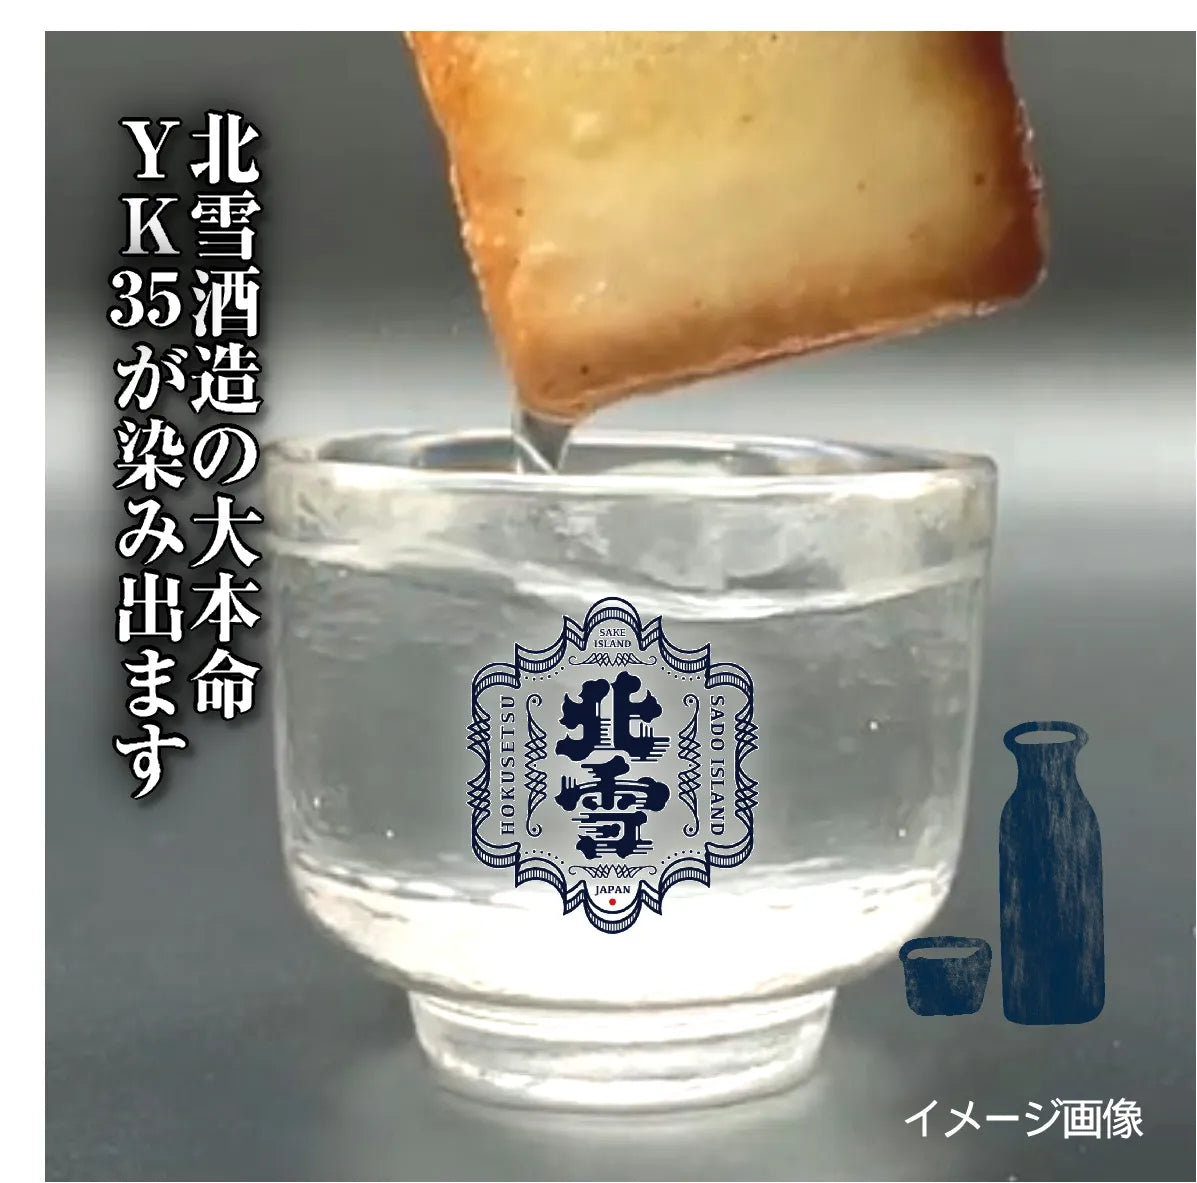 「佐渡日本酒×チーズラングドシャ(14枚入り)」 口の中で香り高く広がる大吟醸酒の贅沢スイーツ